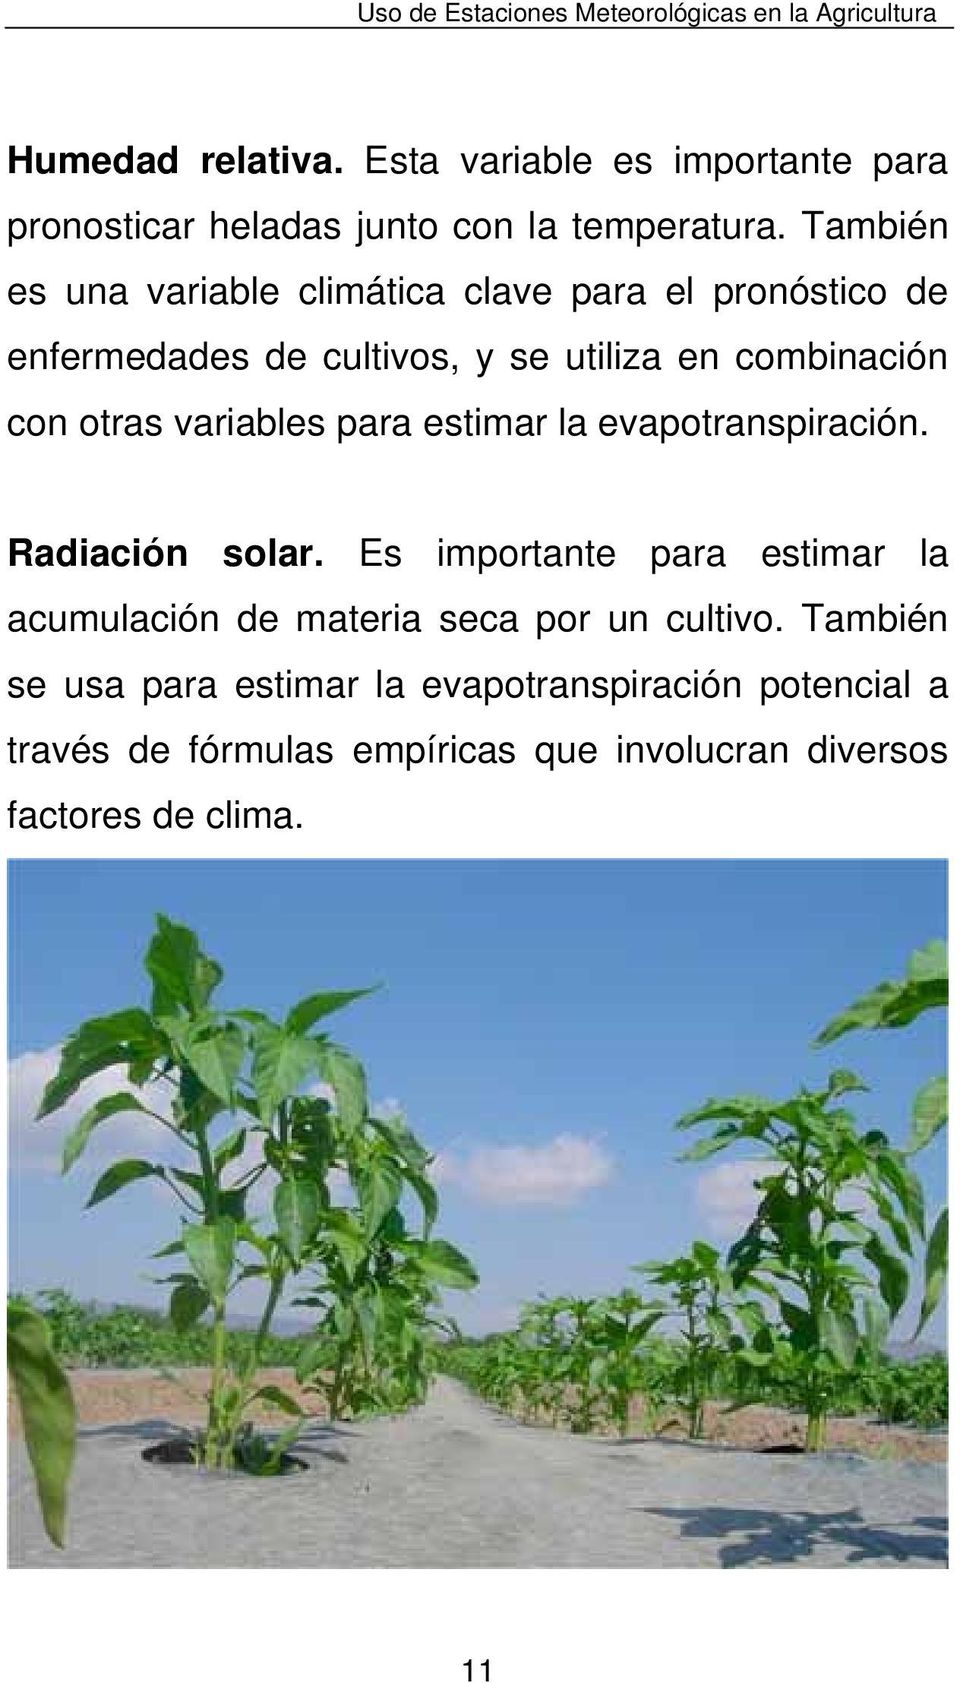 También es una variable climática clave para el pronóstico de enfermedades de cultivos, y se utiliza en combinación con otras variables